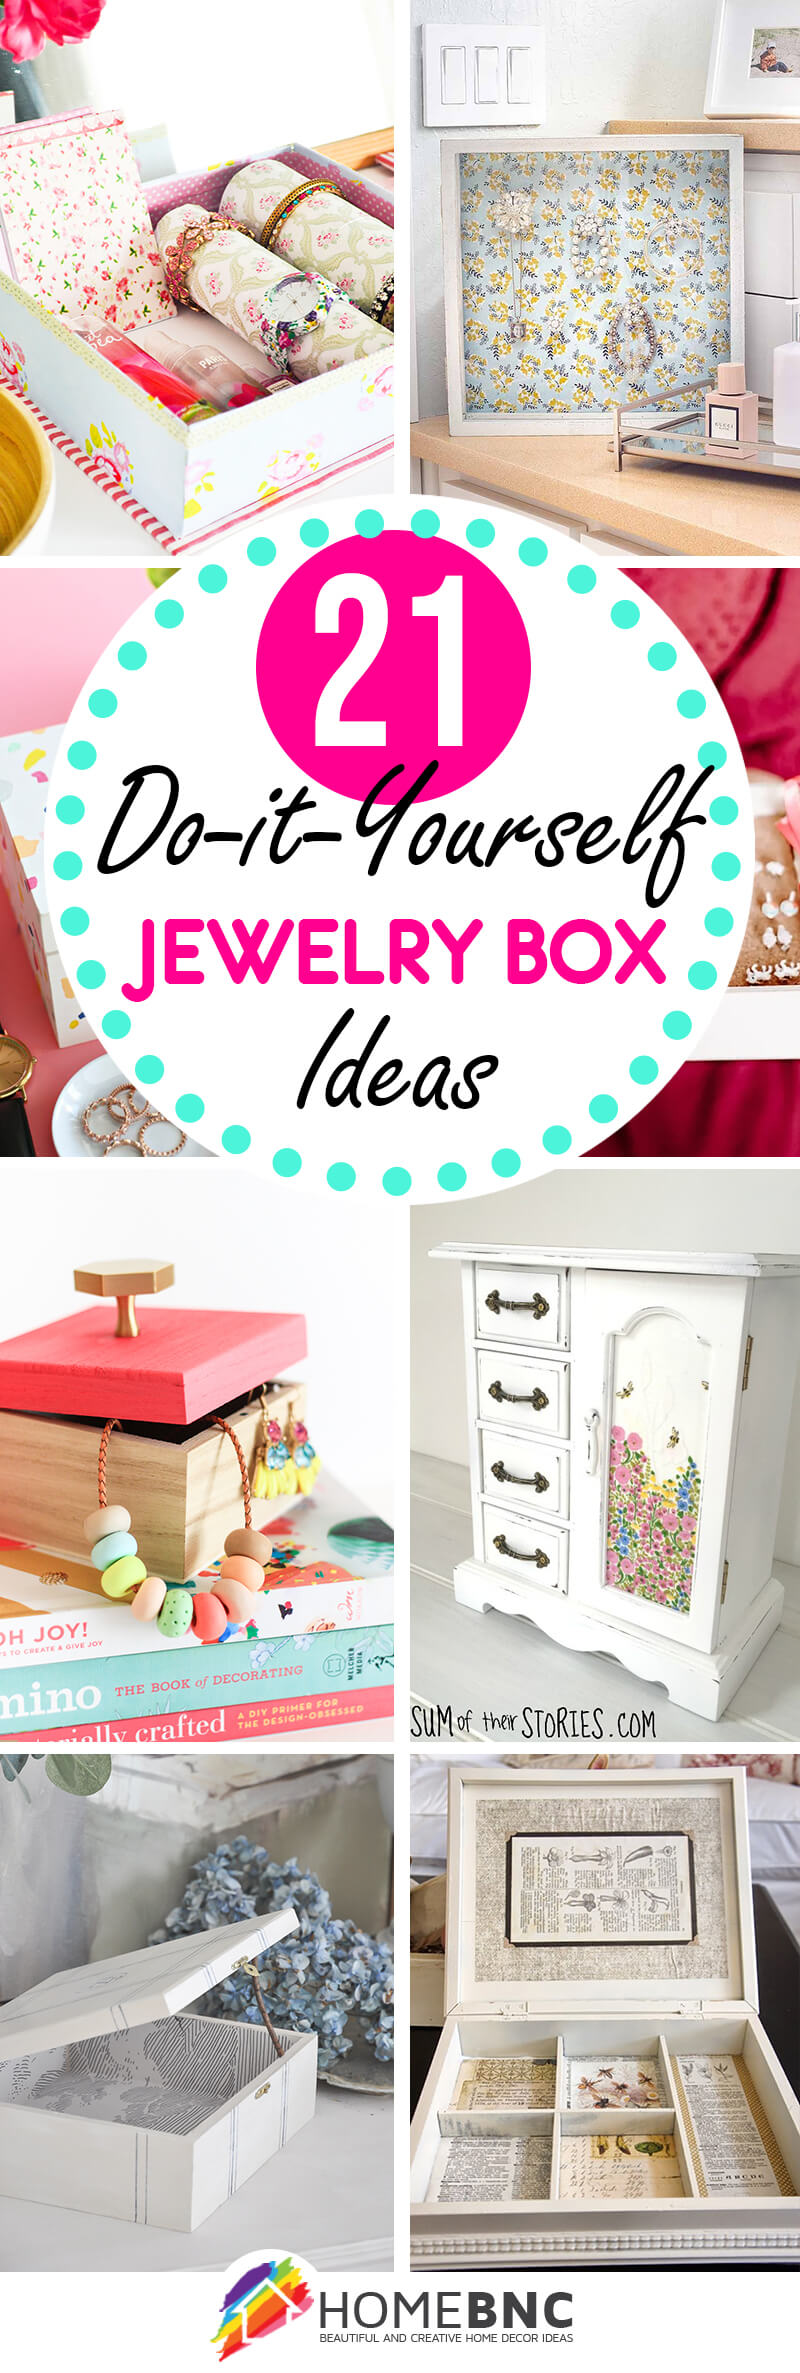 21 Pretty Diy Jewelry Box Ideas That